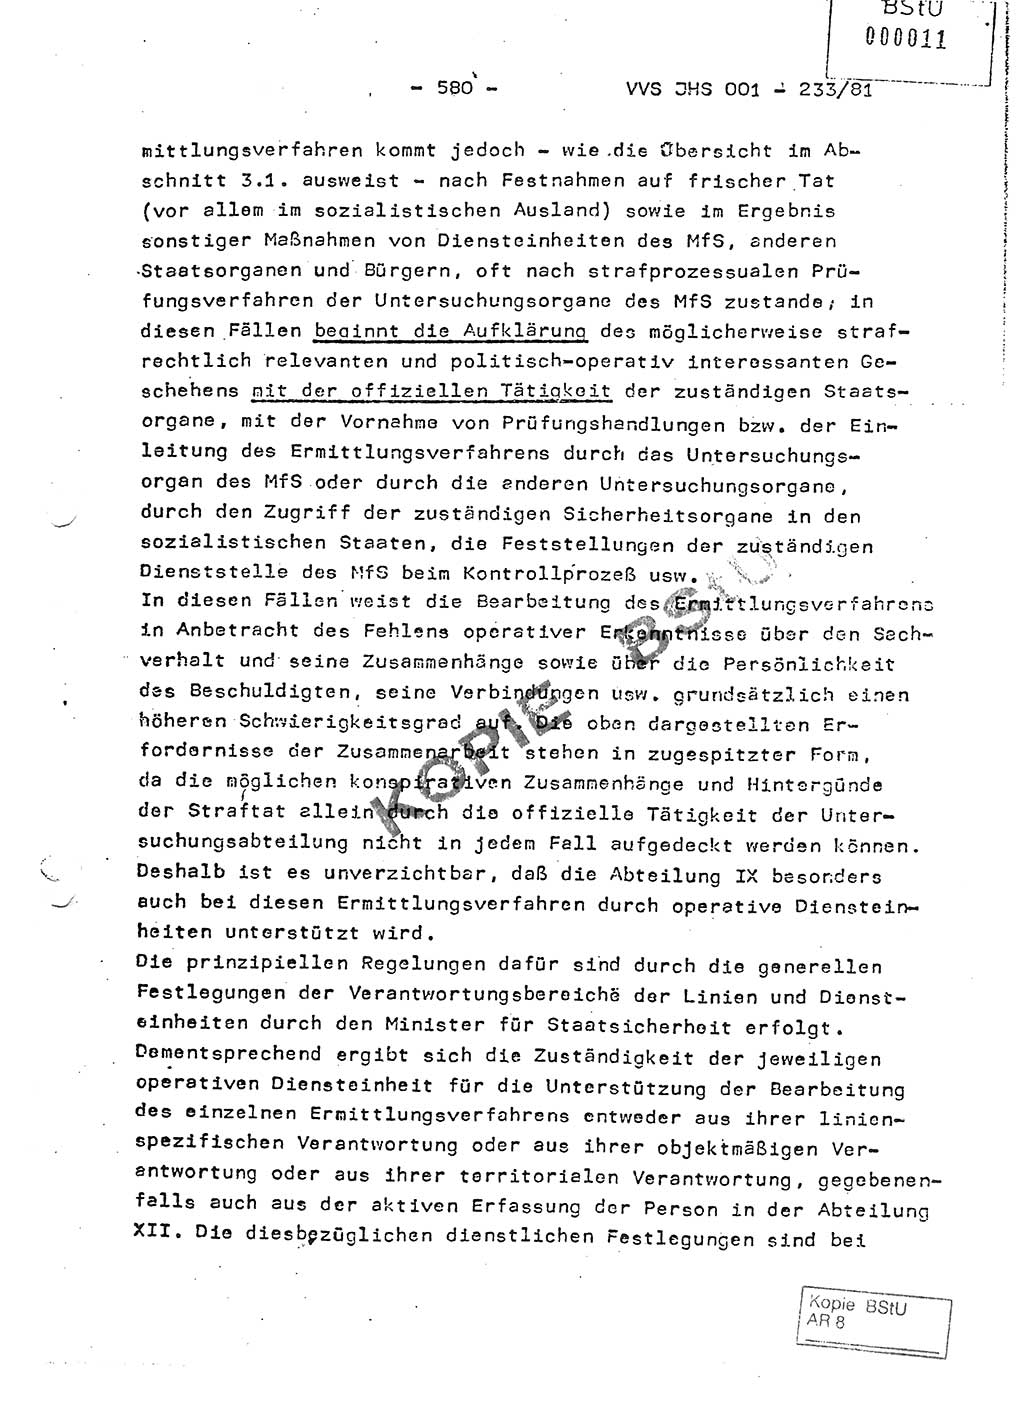 Dissertation Oberstleutnant Horst Zank (JHS), Oberstleutnant Dr. Karl-Heinz Knoblauch (JHS), Oberstleutnant Gustav-Adolf Kowalewski (HA Ⅸ), Oberstleutnant Wolfgang Plötner (HA Ⅸ), Ministerium für Staatssicherheit (MfS) [Deutsche Demokratische Republik (DDR)], Juristische Hochschule (JHS), Vertrauliche Verschlußsache (VVS) o001-233/81, Potsdam 1981, Blatt 580 (Diss. MfS DDR JHS VVS o001-233/81 1981, Bl. 580)